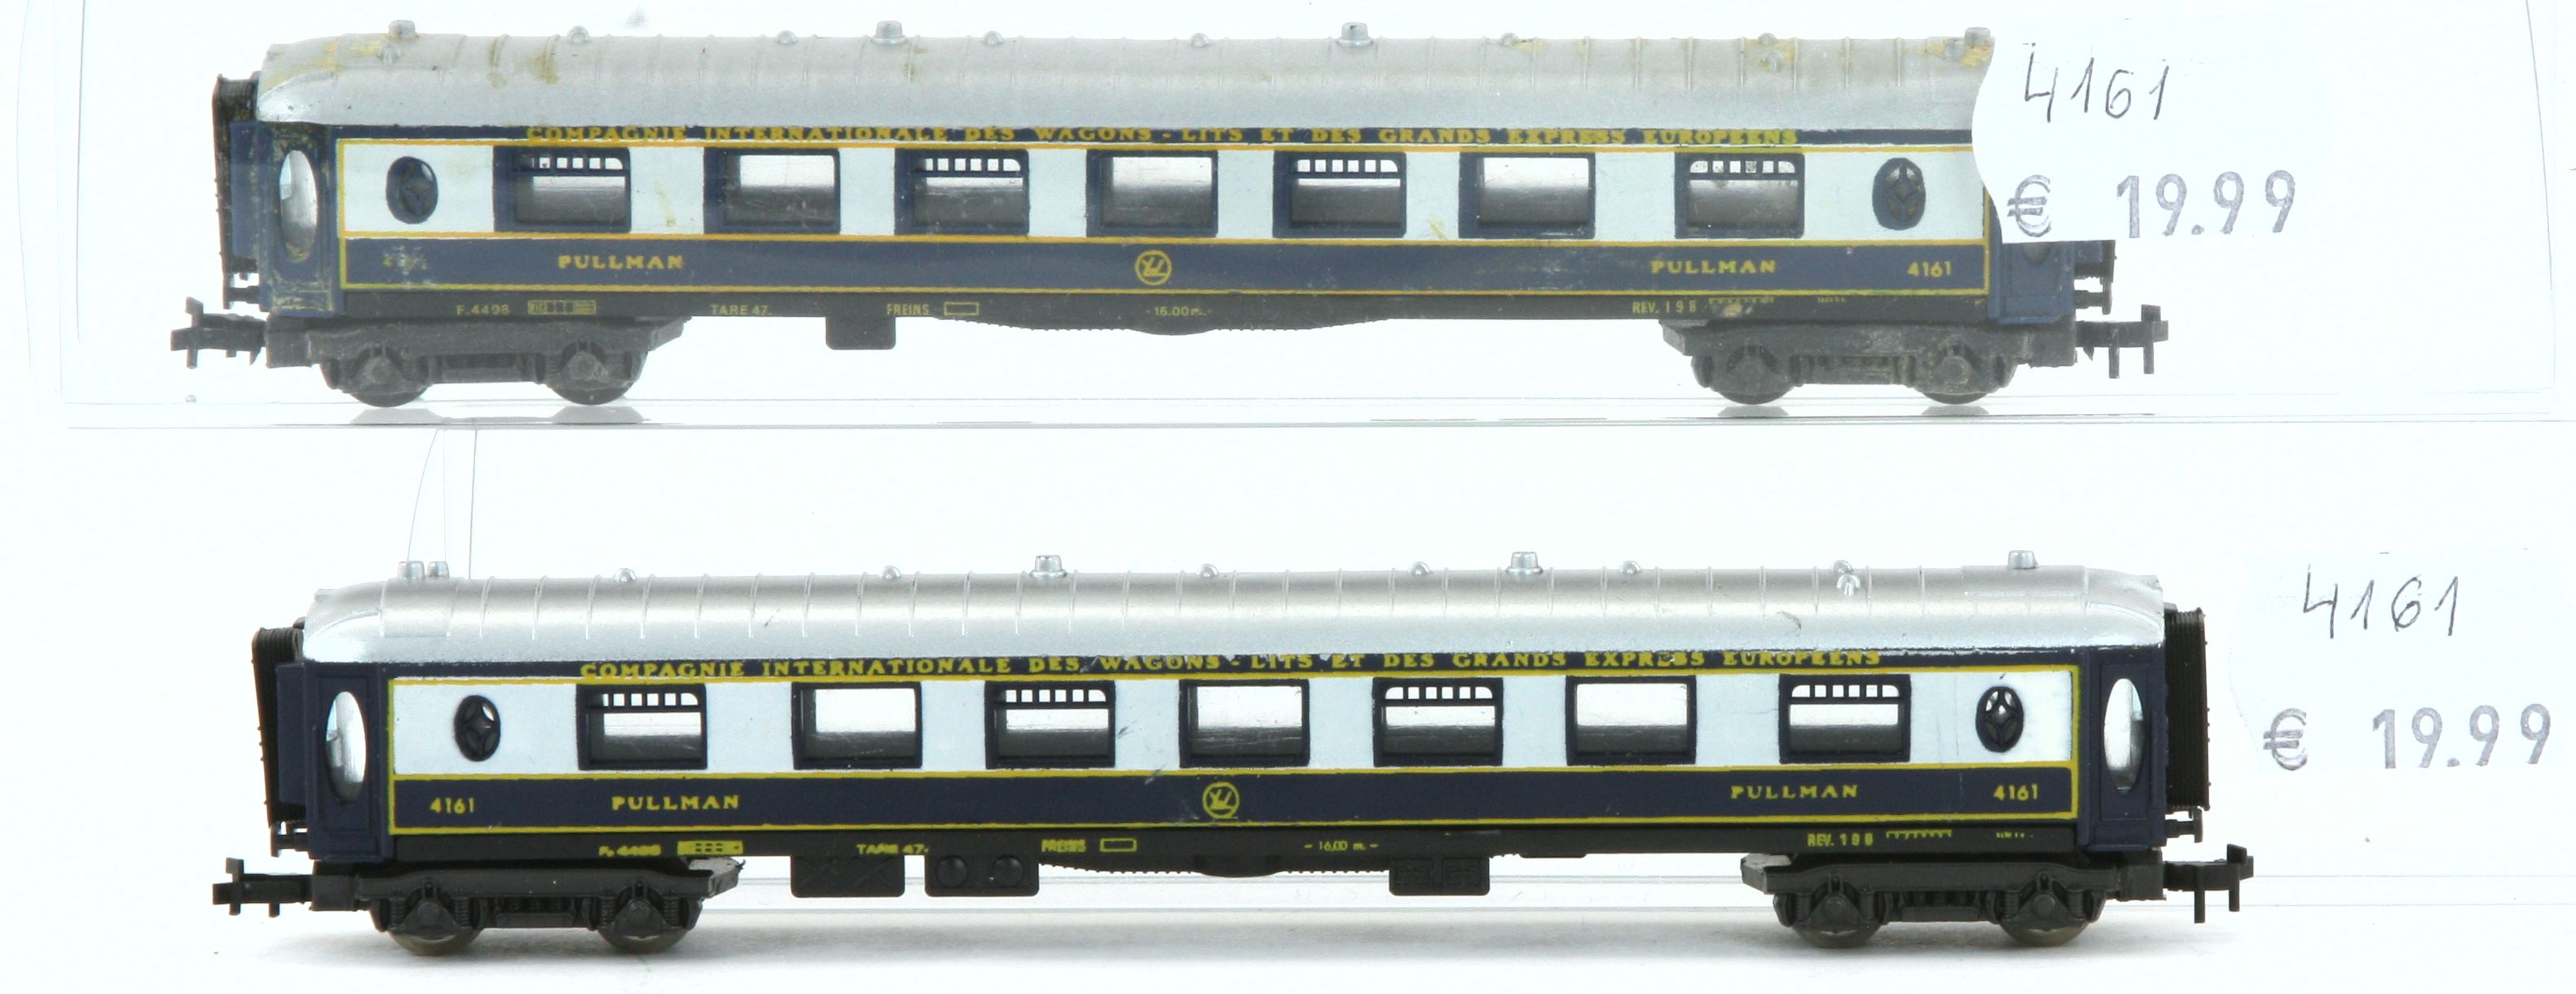 Lima 4161-G - Wagen Pullmann, blau, weiß, gelb